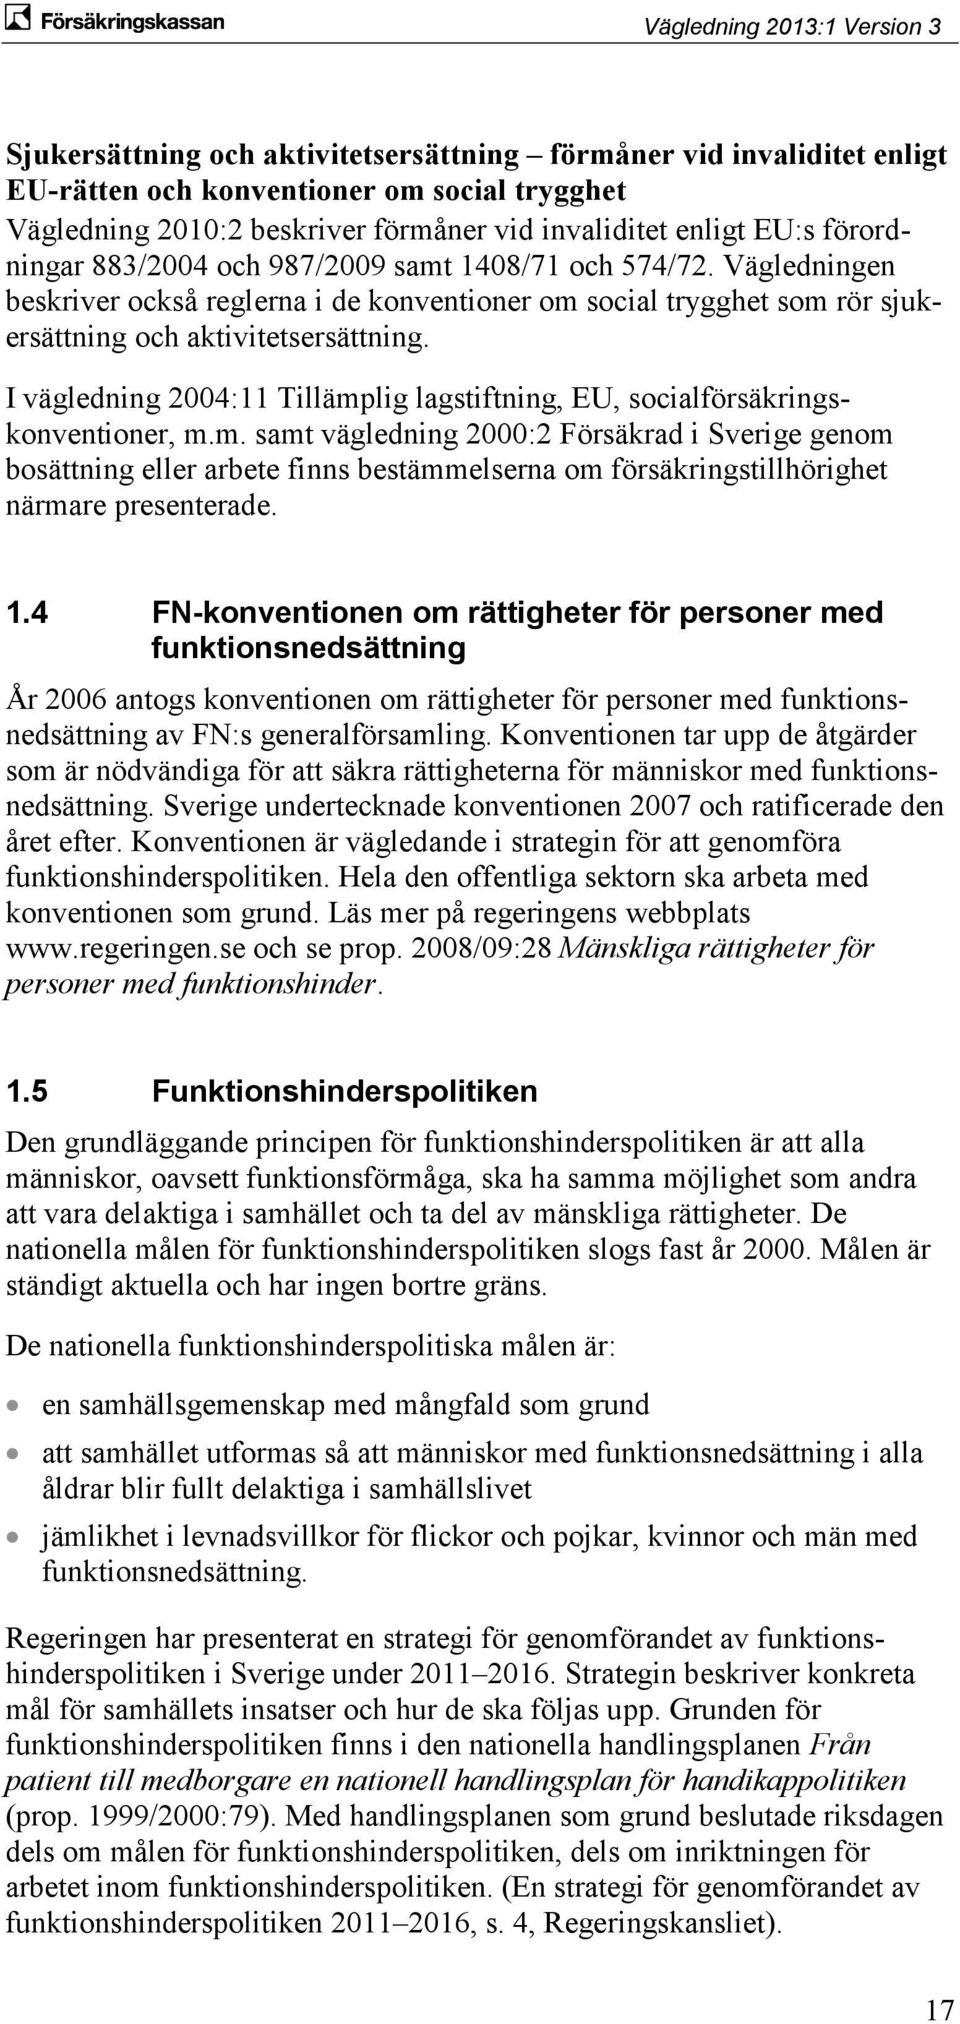 I vägledning 2004:11 Tillämplig lagstiftning, EU, socialförsäkringskonventioner, m.m. samt vägledning 2000:2 Försäkrad i Sverige genom bosättning eller arbete finns bestämmelserna om försäkringstillhörighet närmare presenterade.